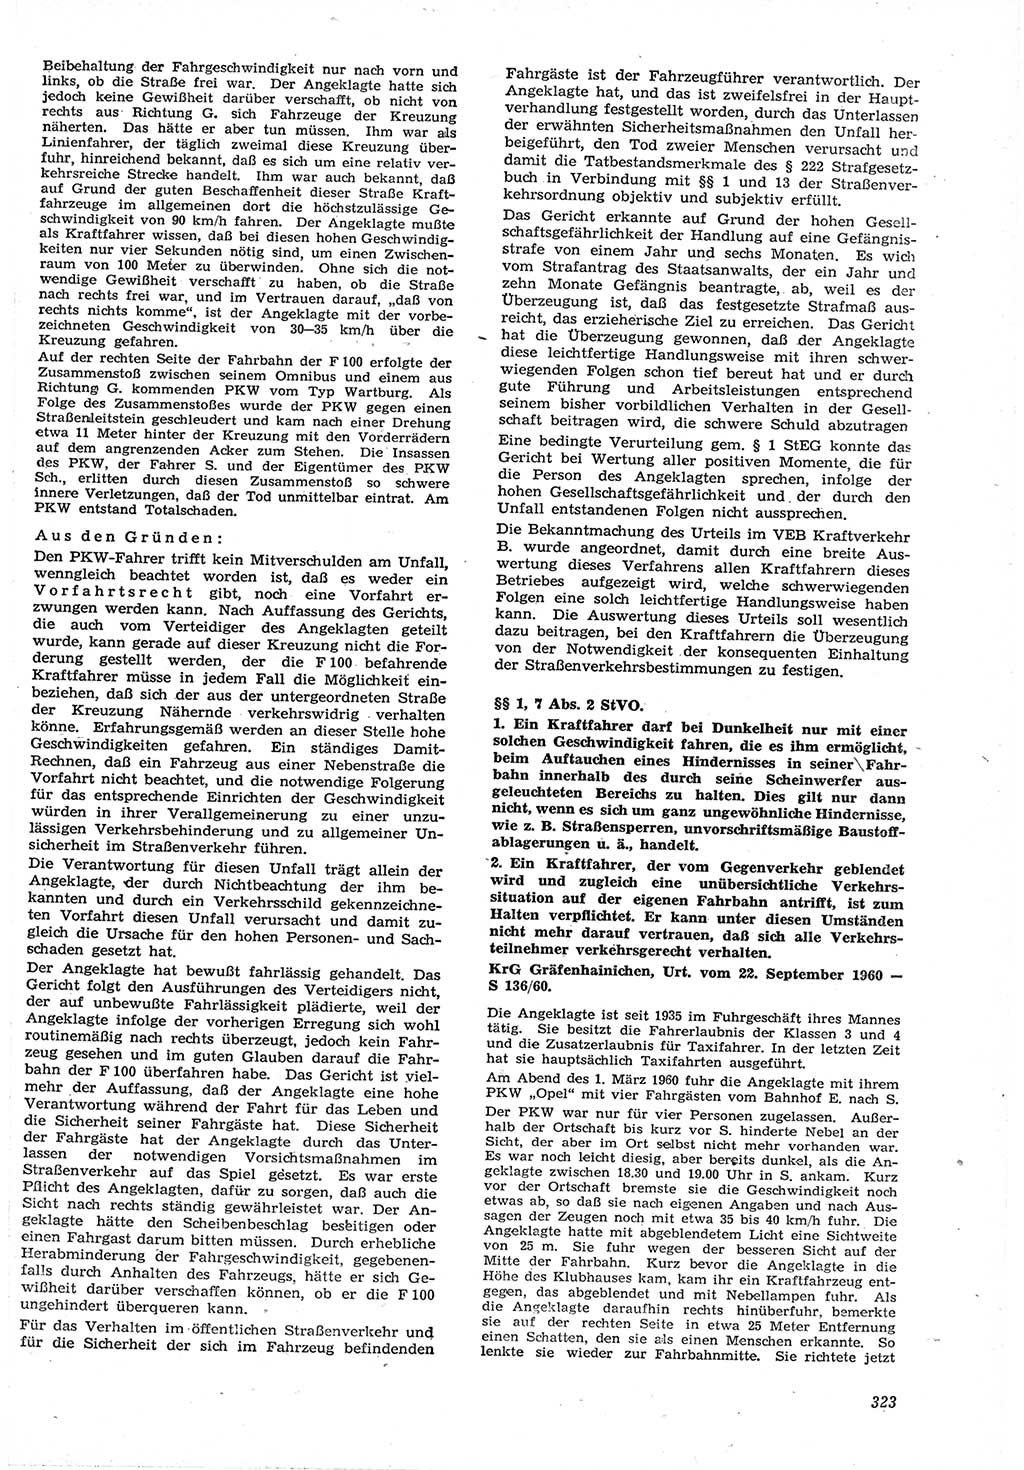 Neue Justiz (NJ), Zeitschrift für Recht und Rechtswissenschaft [Deutsche Demokratische Republik (DDR)], 15. Jahrgang 1961, Seite 323 (NJ DDR 1961, S. 323)